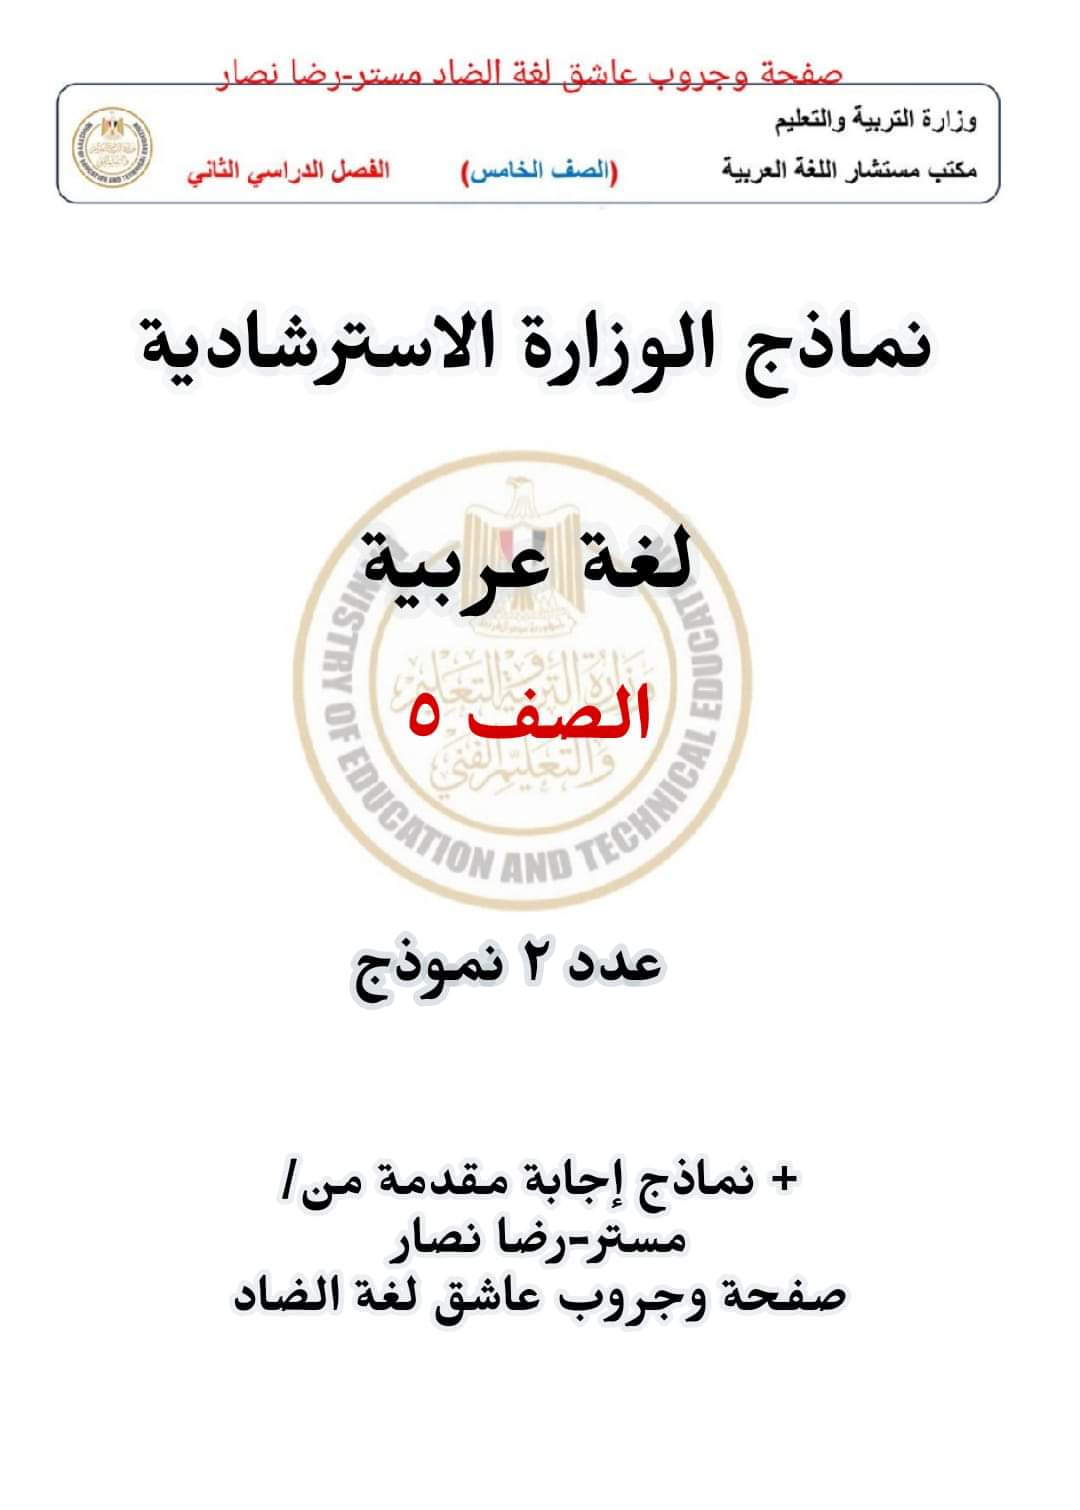 نماذج الوزارة الرسمية في اللغة العربية للصف الخامس الابتدائي الترم الثاني - تحميل مراجعات خامسة ابتدائي